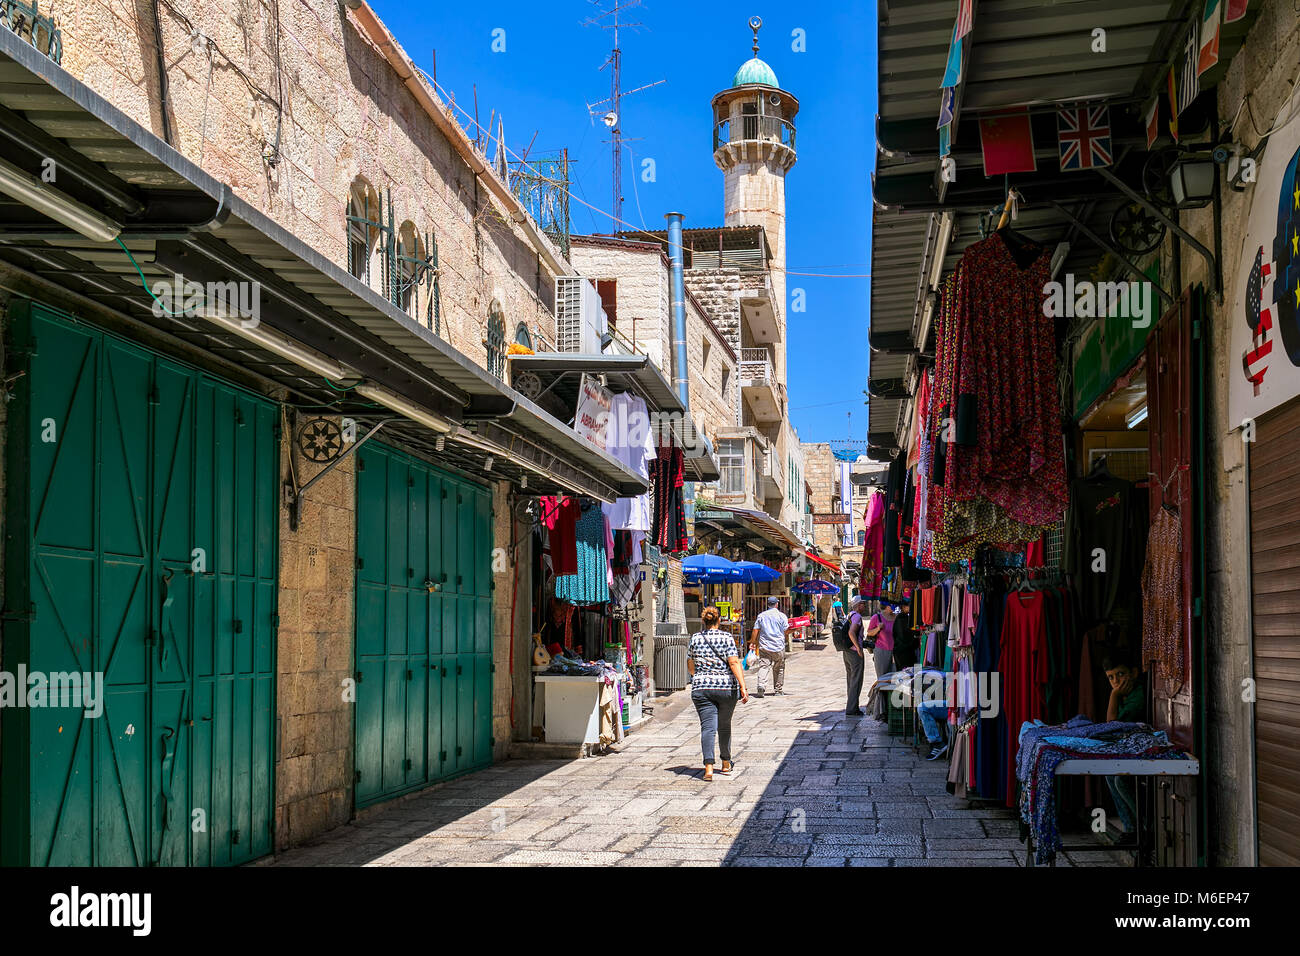 JERUSALEM, Israel - 16. JULI 2017: Gasse in den kleinen Geschäften der berühmten Basar-Markt in der Altstadt von Jerusalem, sehr beliebtes Ziel mit l Stockfoto